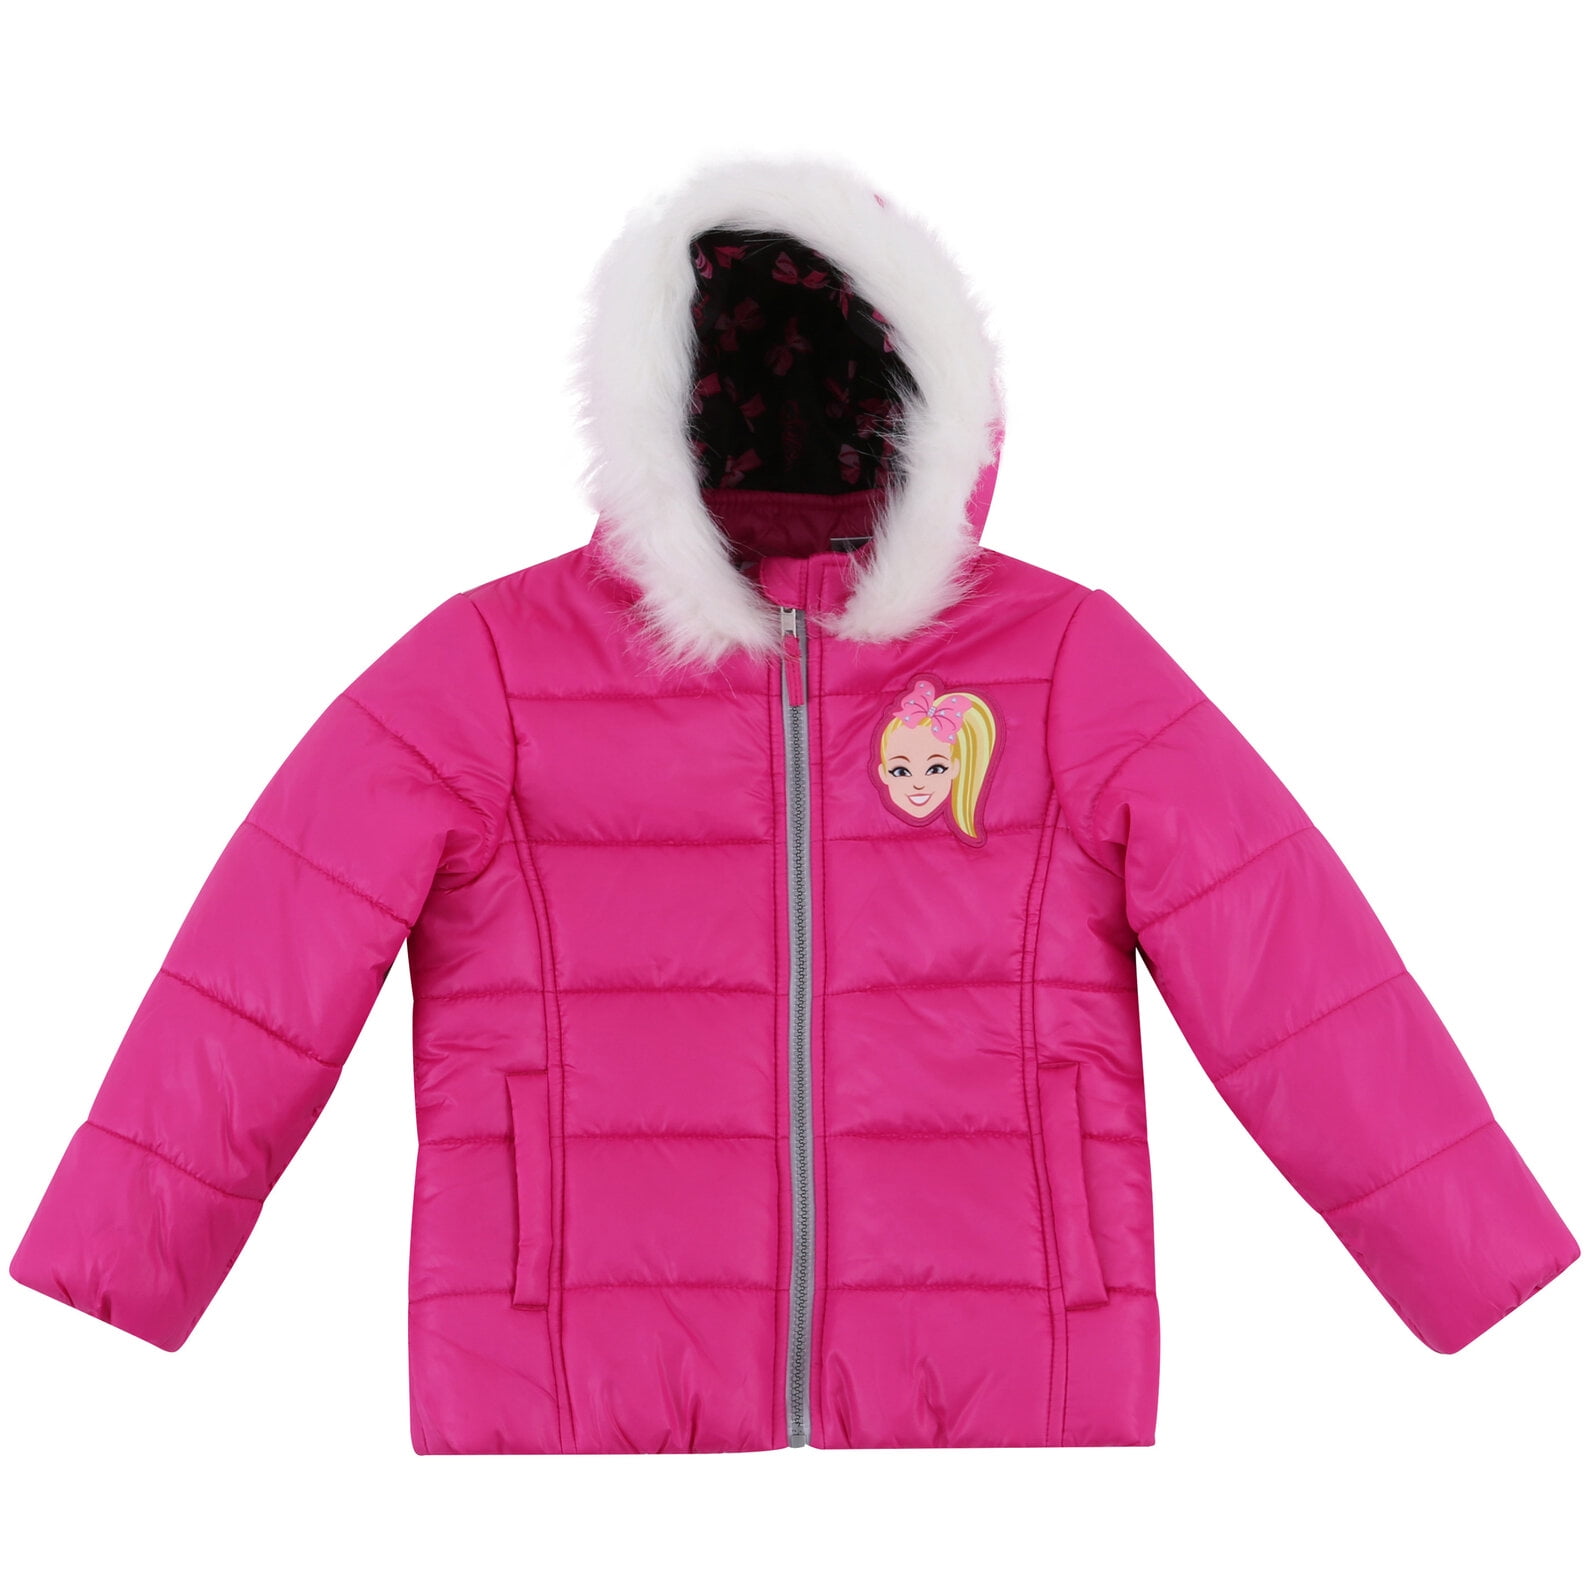 Dreamwave JoJo Siwa Girls Winter Coat Puffer Jacket with Fur Hood 